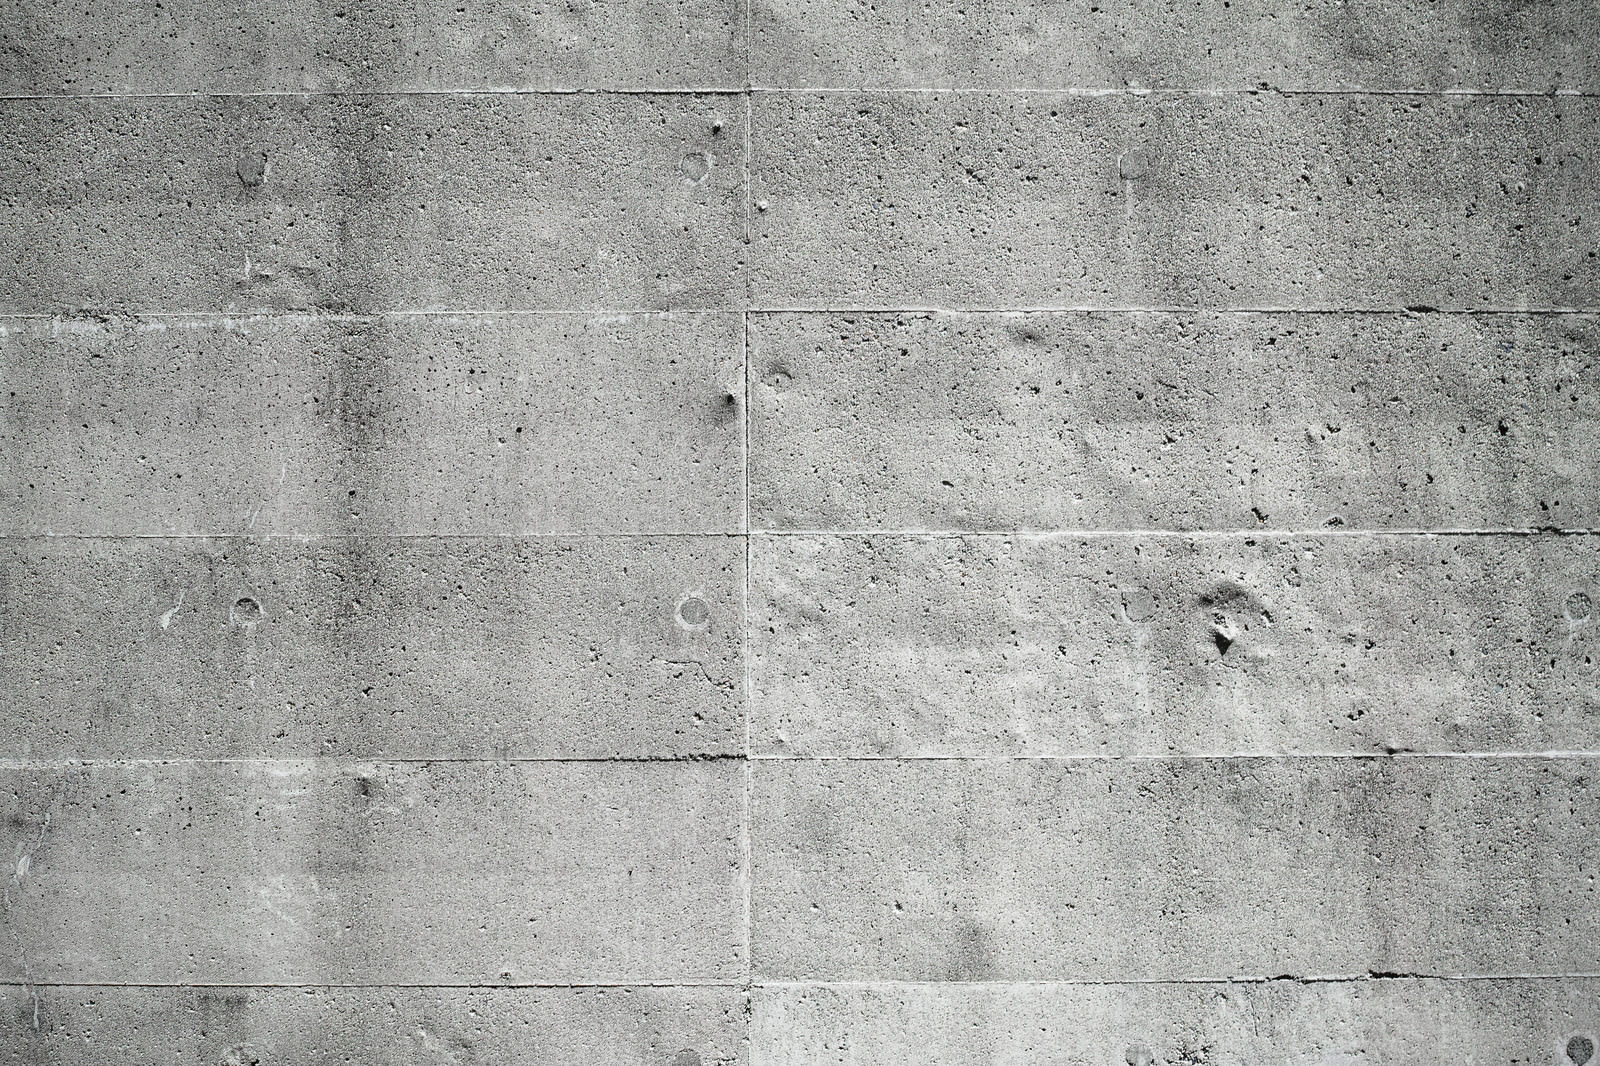 「枠板の跡が目立つコンクリート壁のテクスチャー」の写真